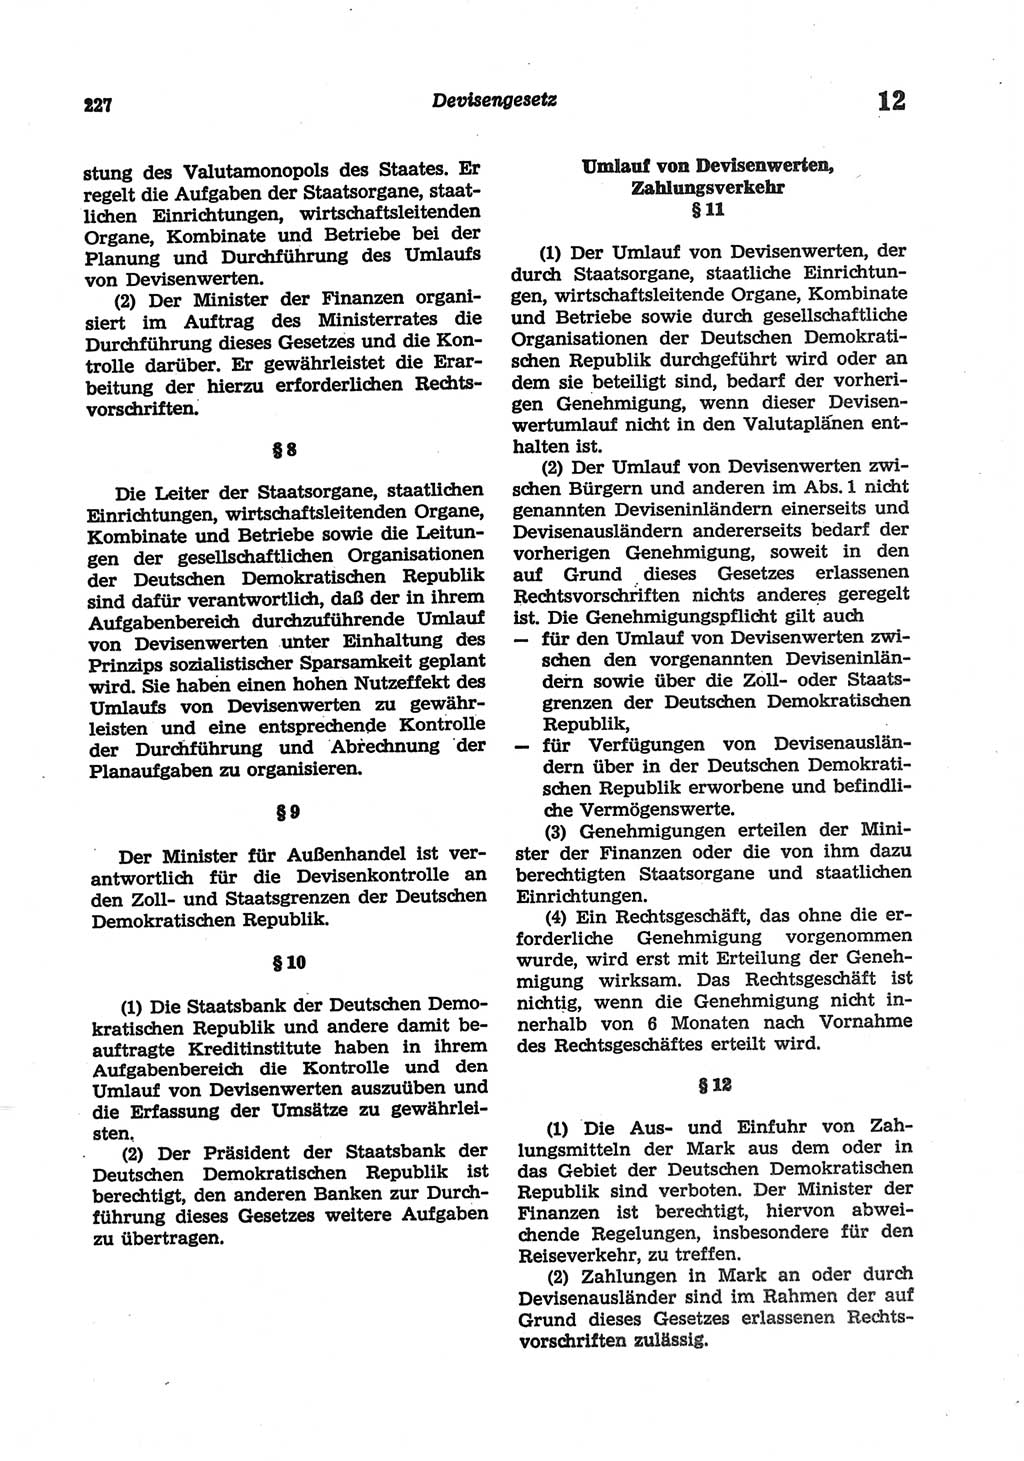 Strafgesetzbuch (StGB) der Deutschen Demokratischen Republik (DDR) und angrenzende Gesetze und Bestimmungen 1977, Seite 227 (StGB DDR Ges. Best. 1977, S. 227)